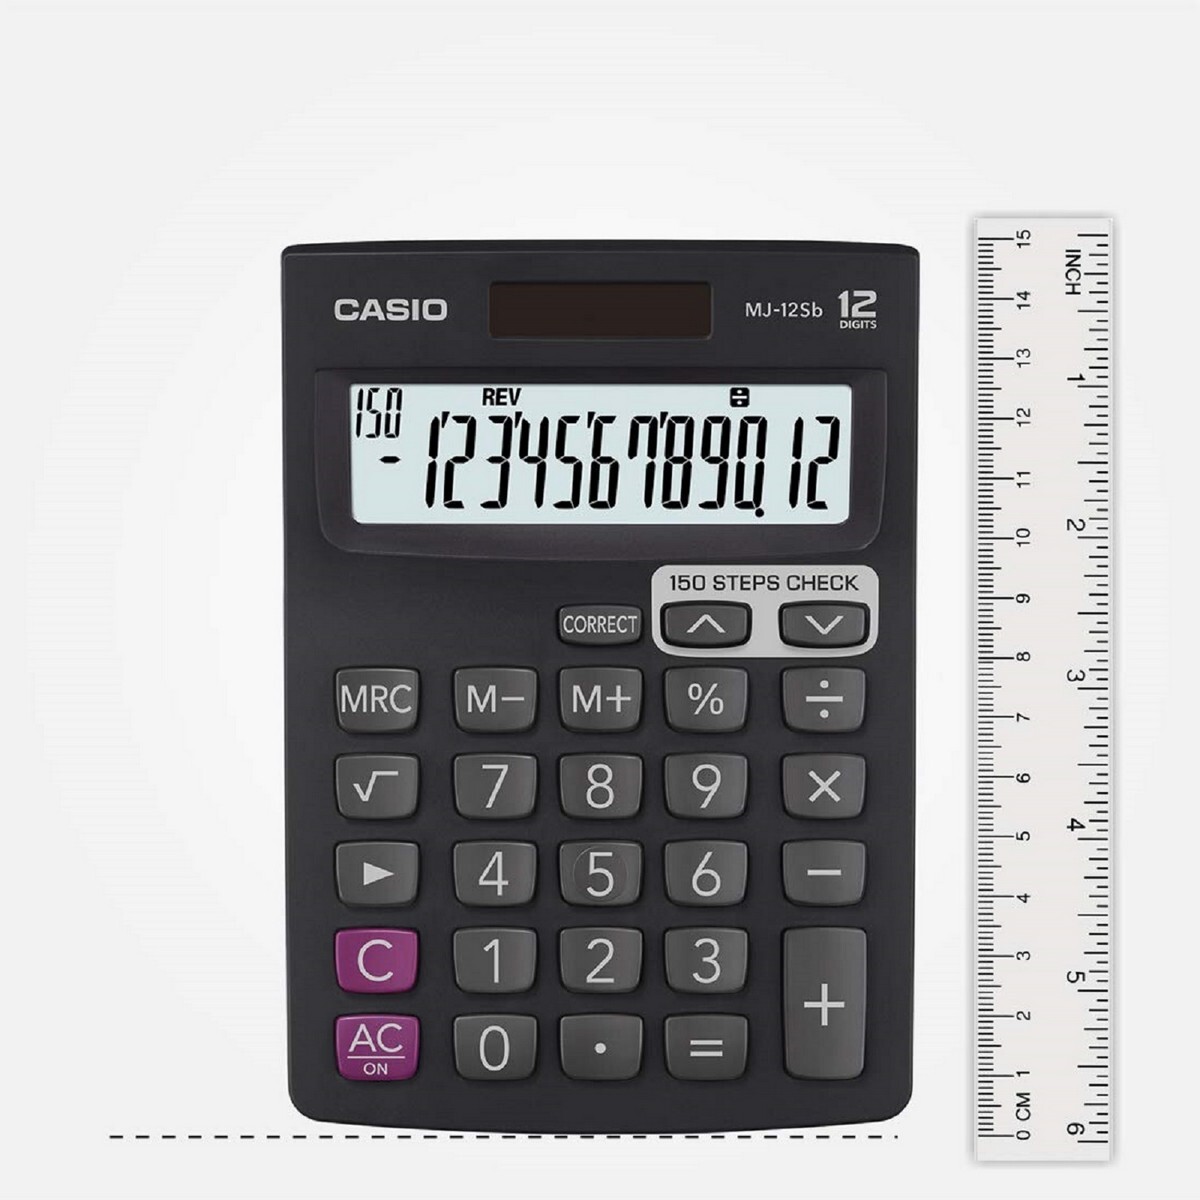 Casio Calculator MJ-12Sb